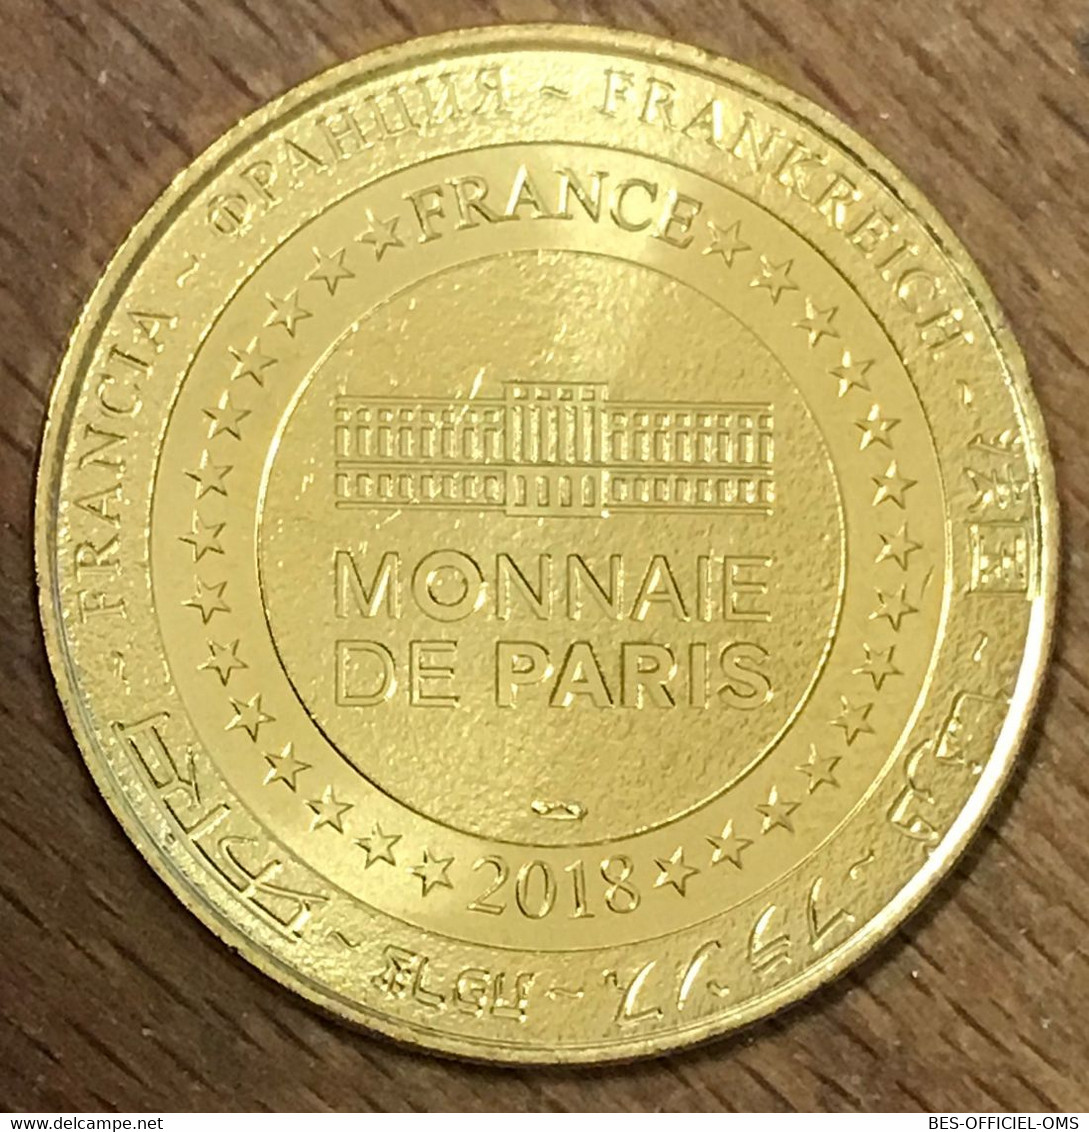 77 DISNEYLAND PARIS DISCOVERYLAND DISNEY MICKEY MDP 2018 MÉDAILLE MONNAIE DE PARIS JETON TOURISTIQUE MEDALS COINS - 2018